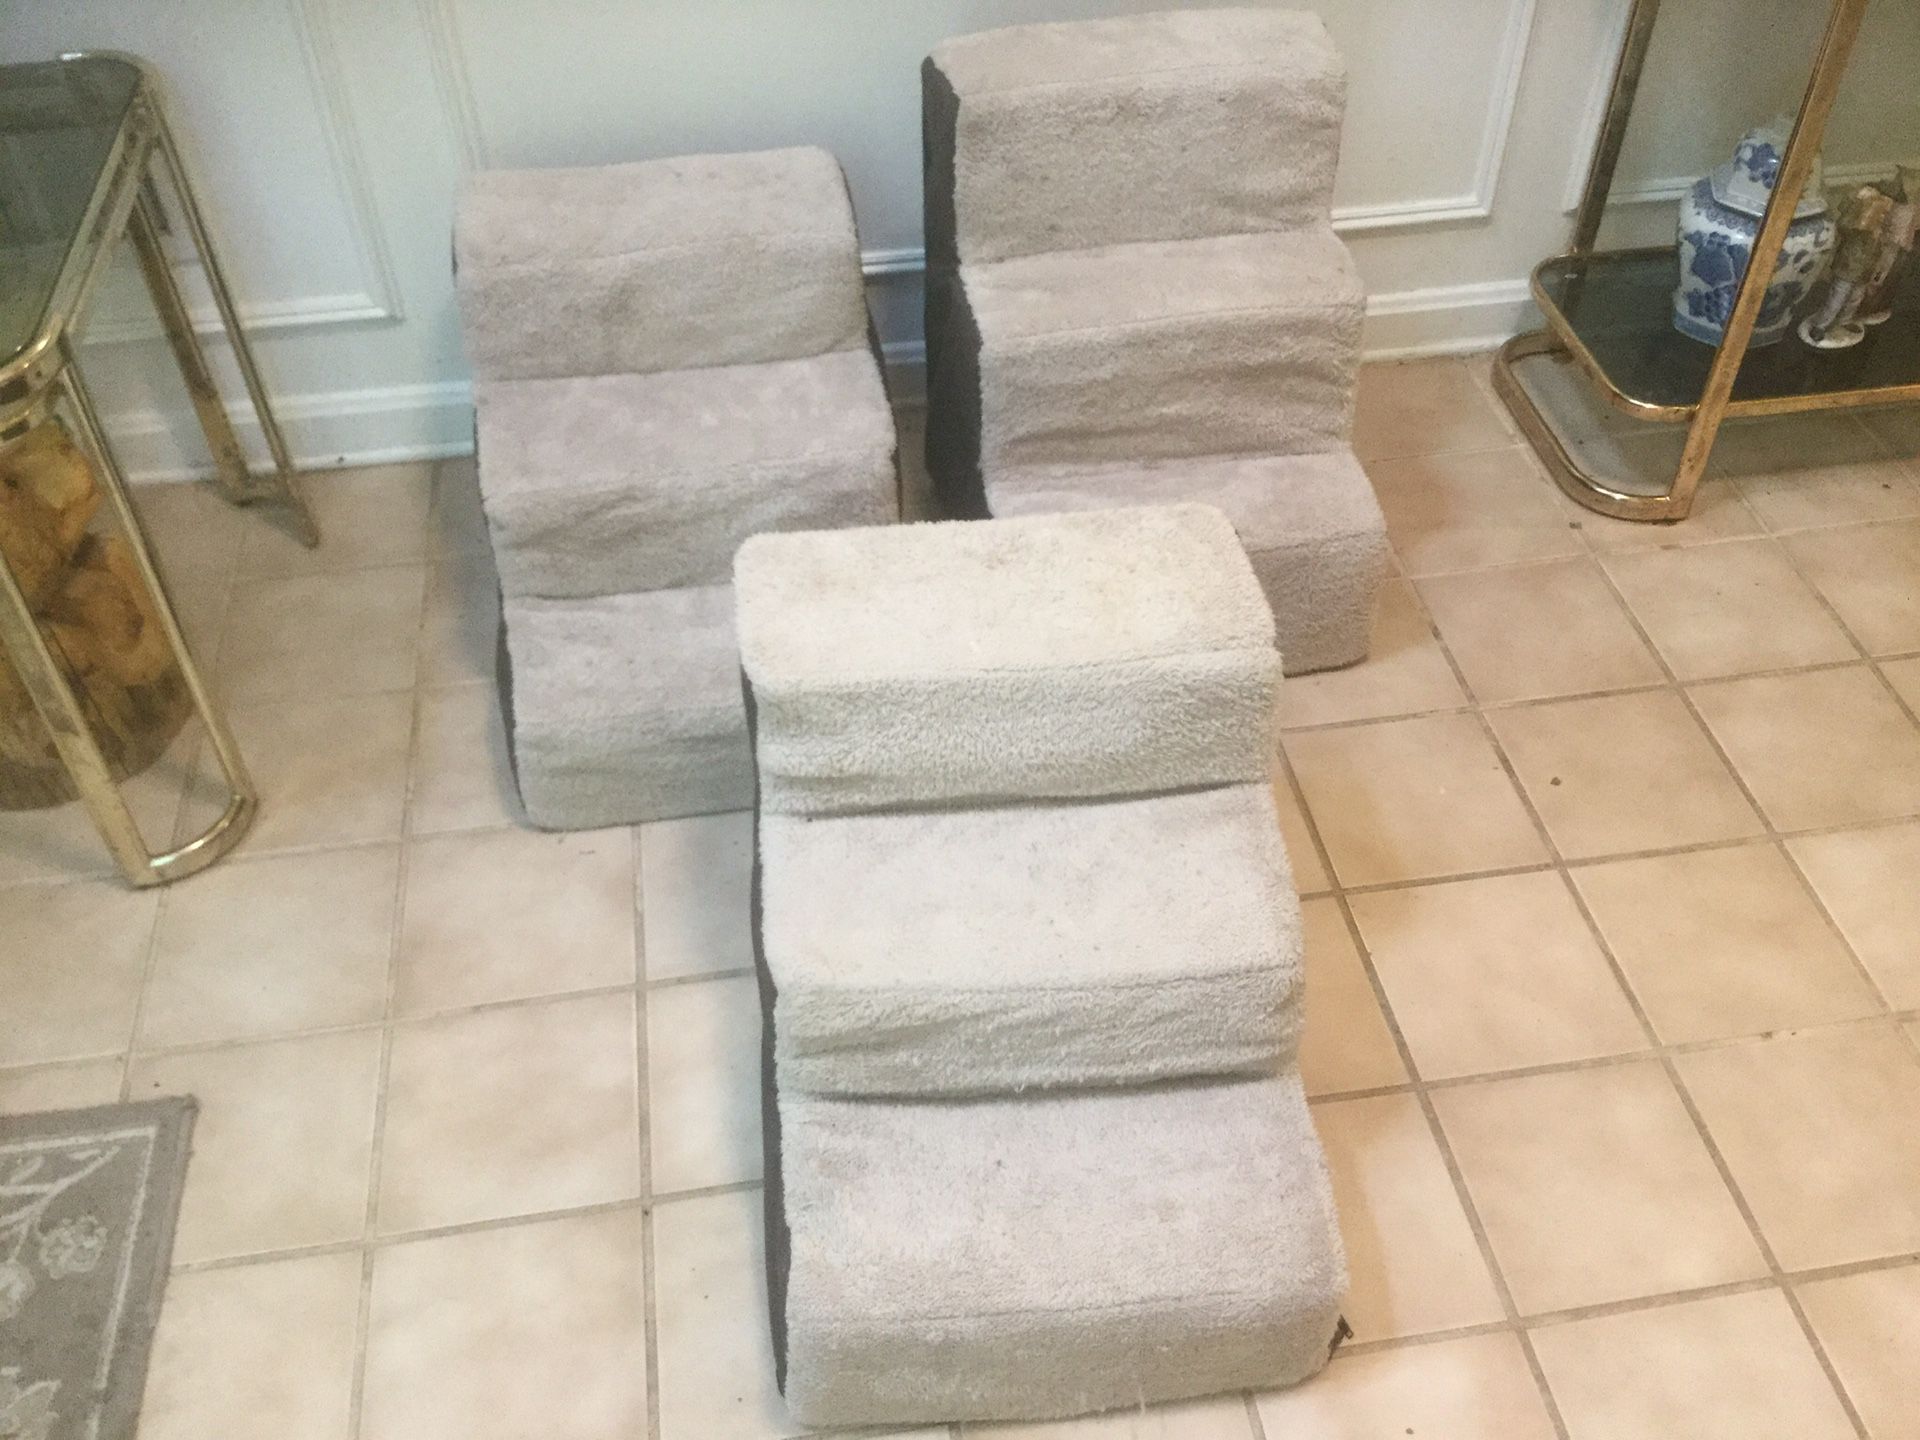 Three pet stairs